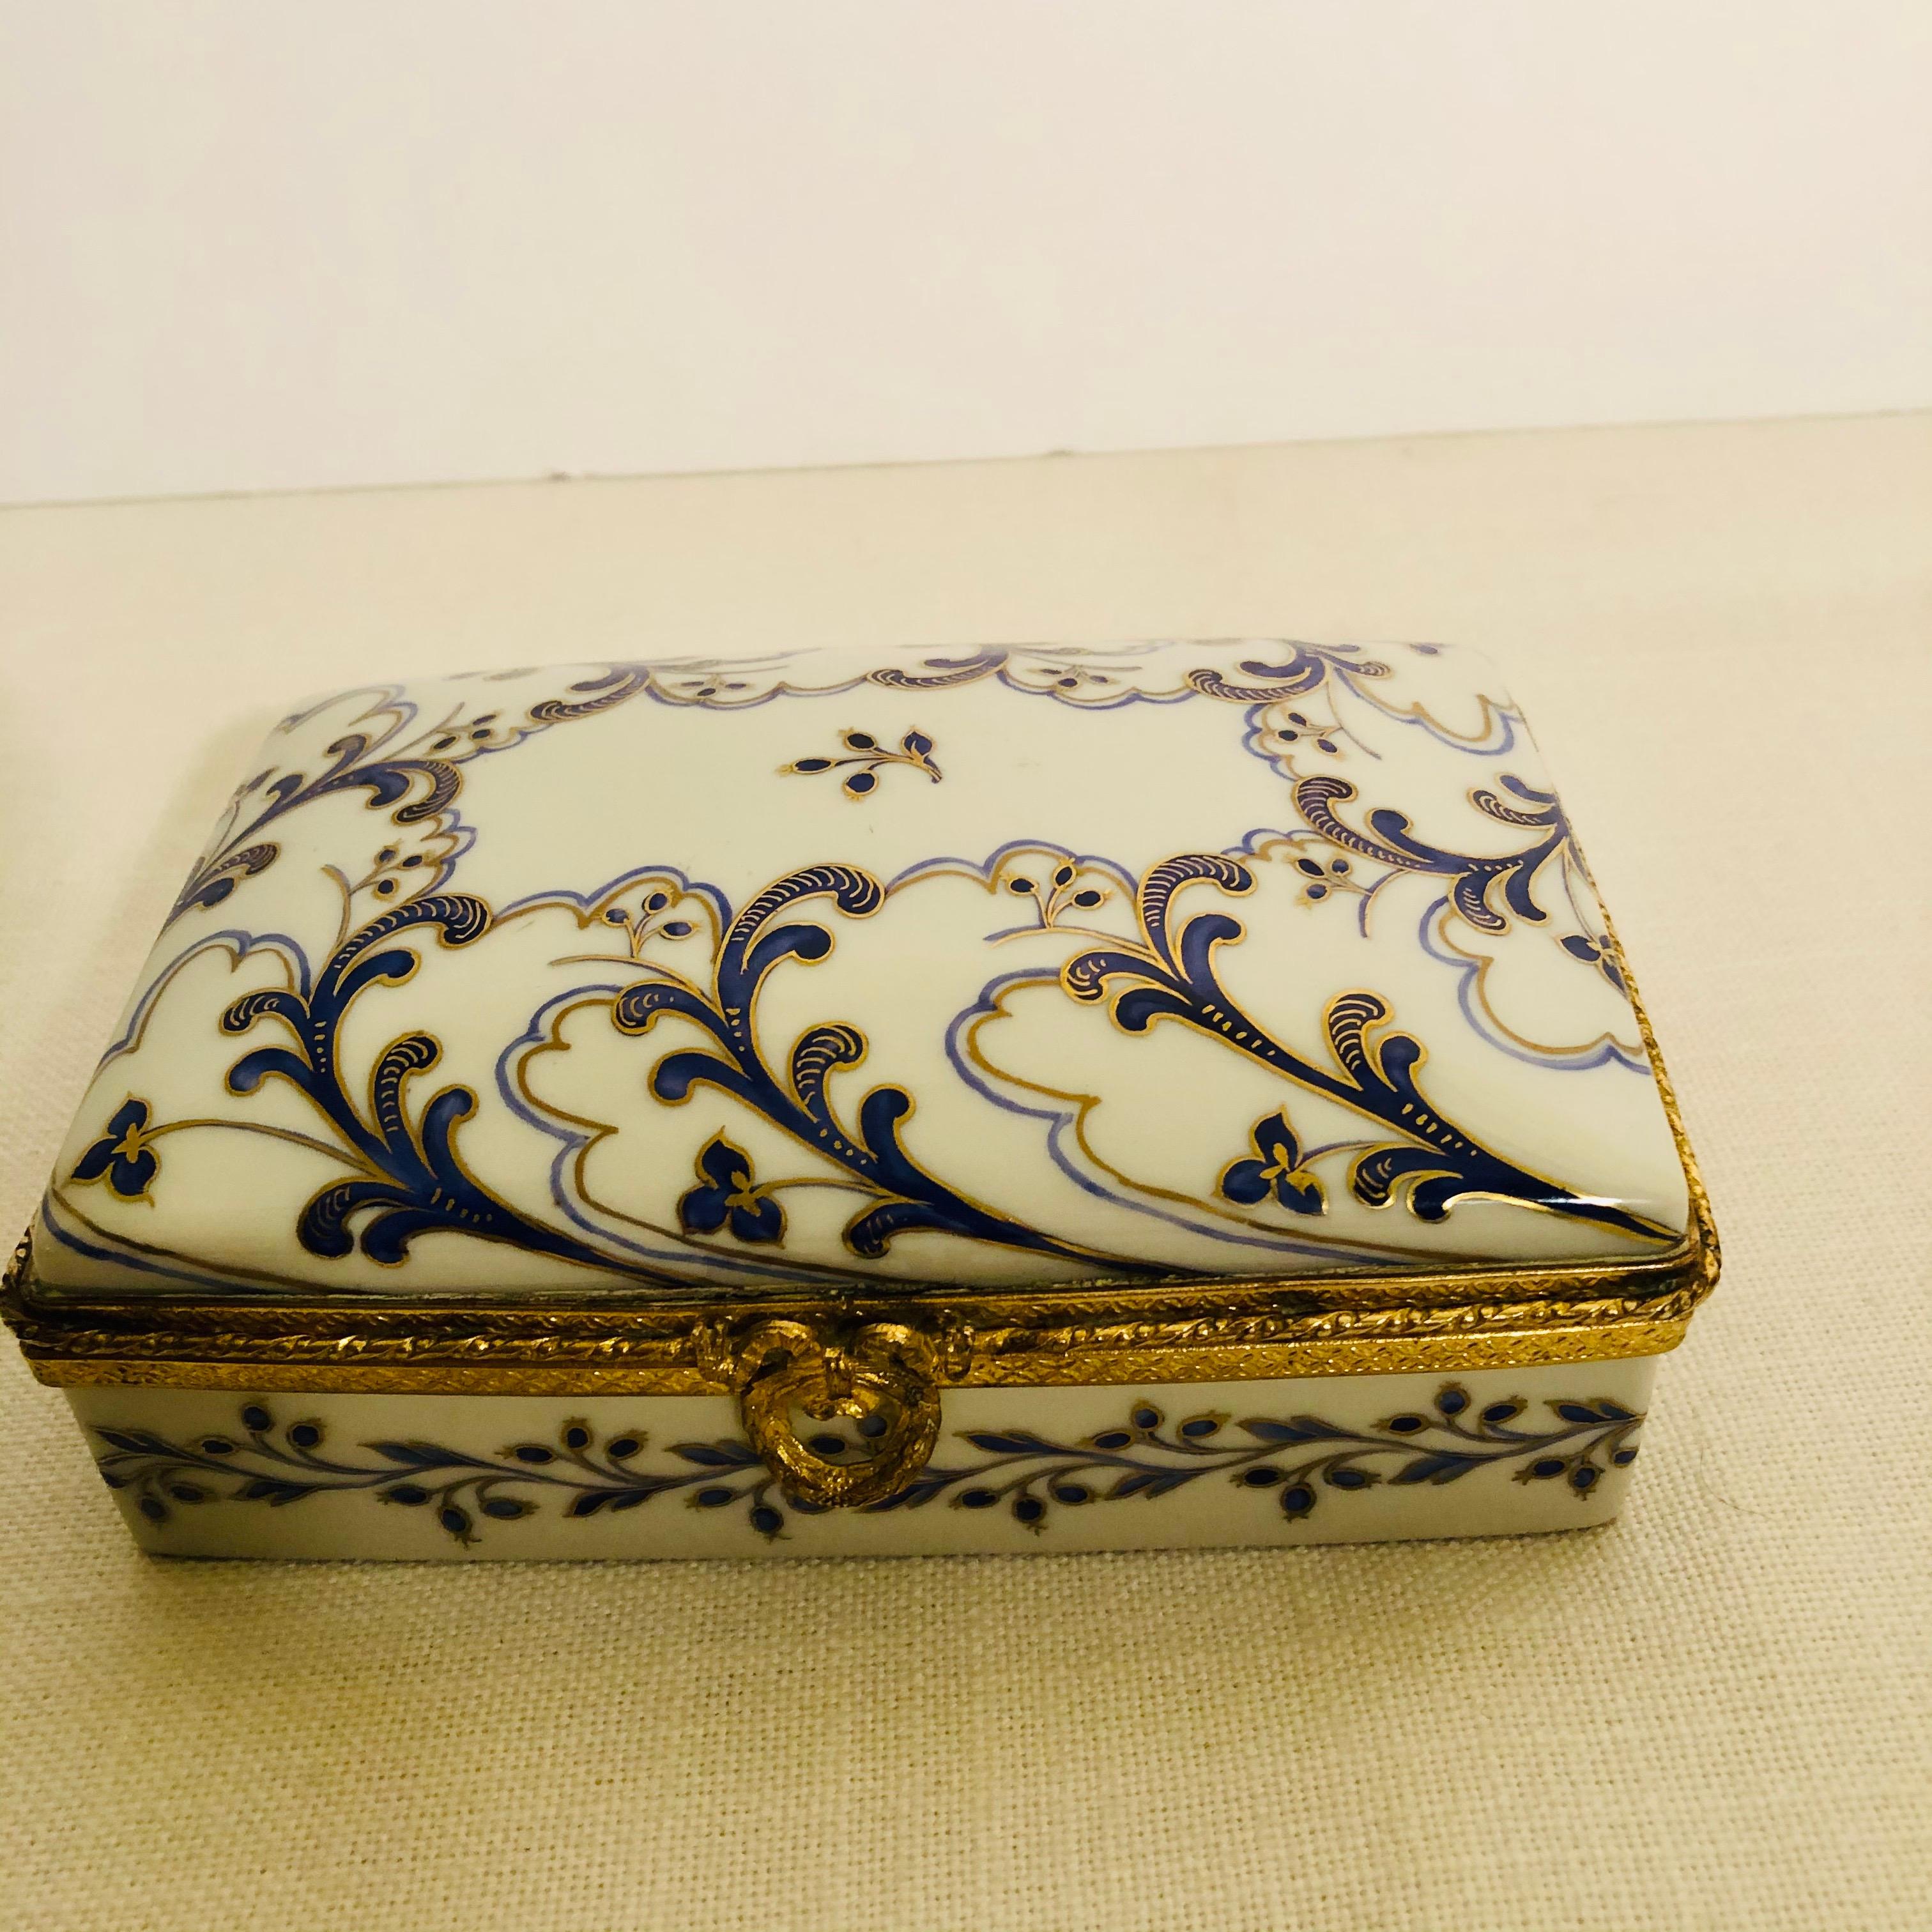 Rococo Boîte en porcelaine Le Tallec avec décorations arabesques peintes à la main en cobalt et or